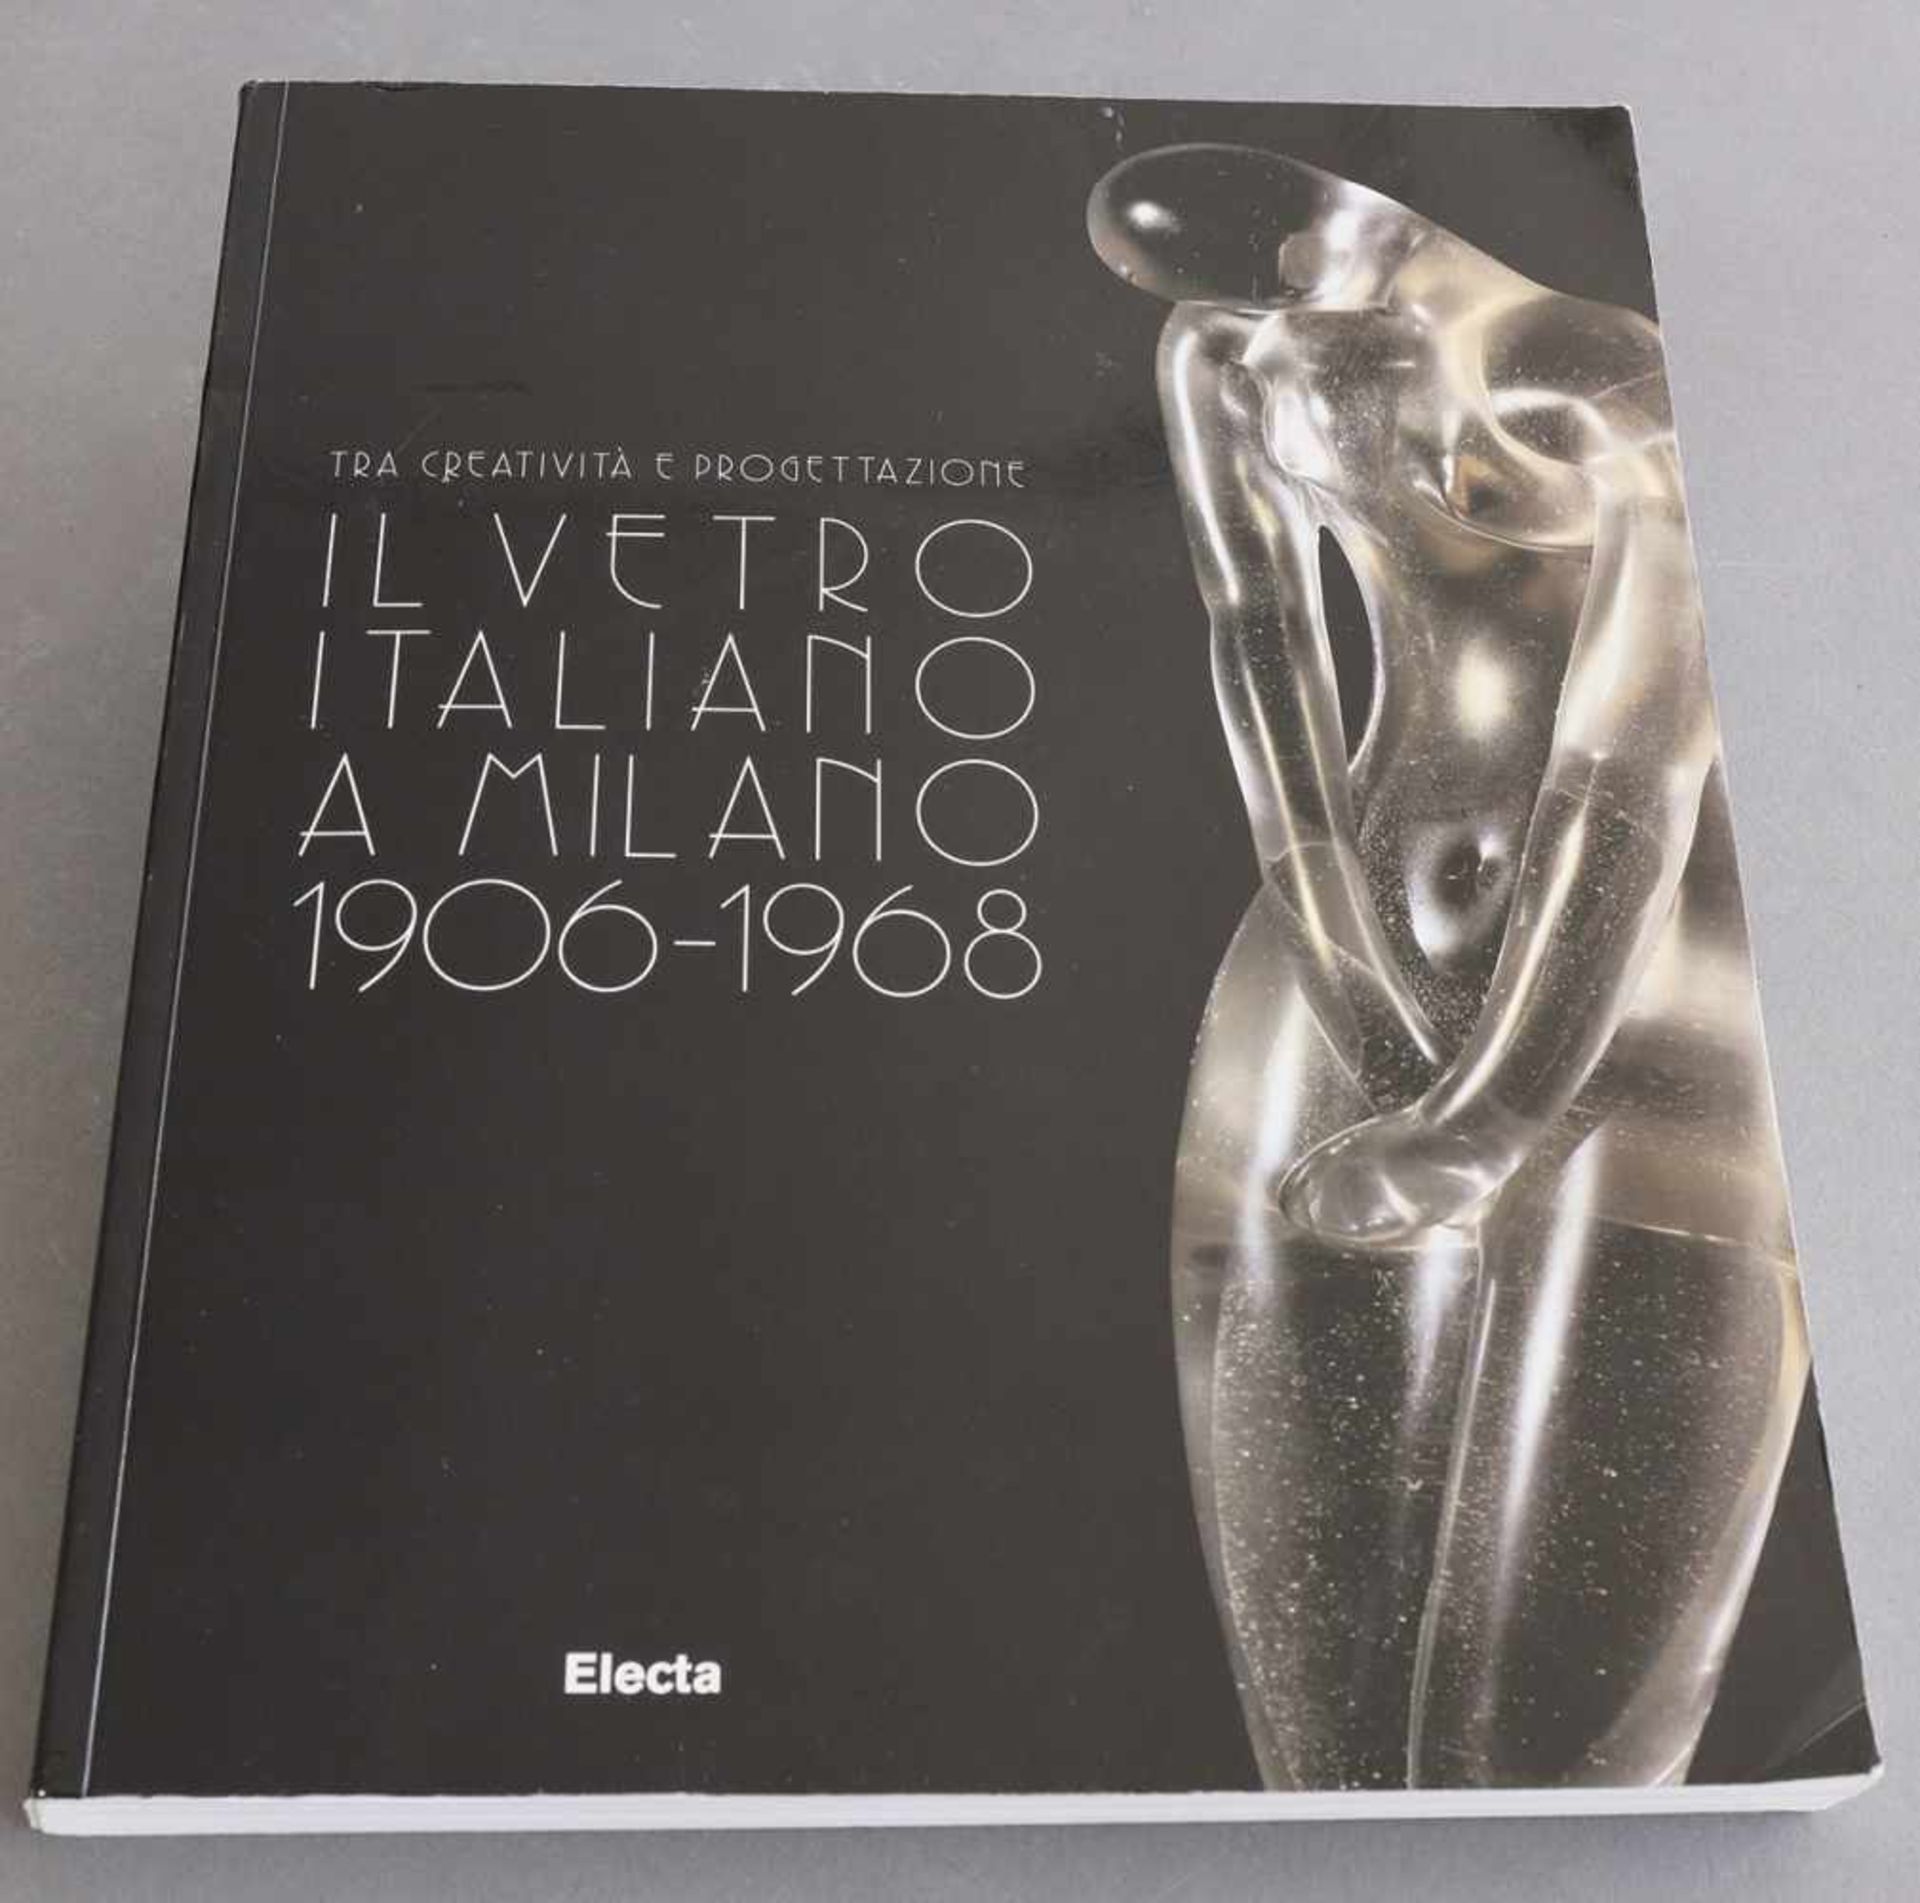 Il vetro di Murano alle Biennali 1895-1972Barovier, Marina, Rosa Barovier Mentasti, Attilia